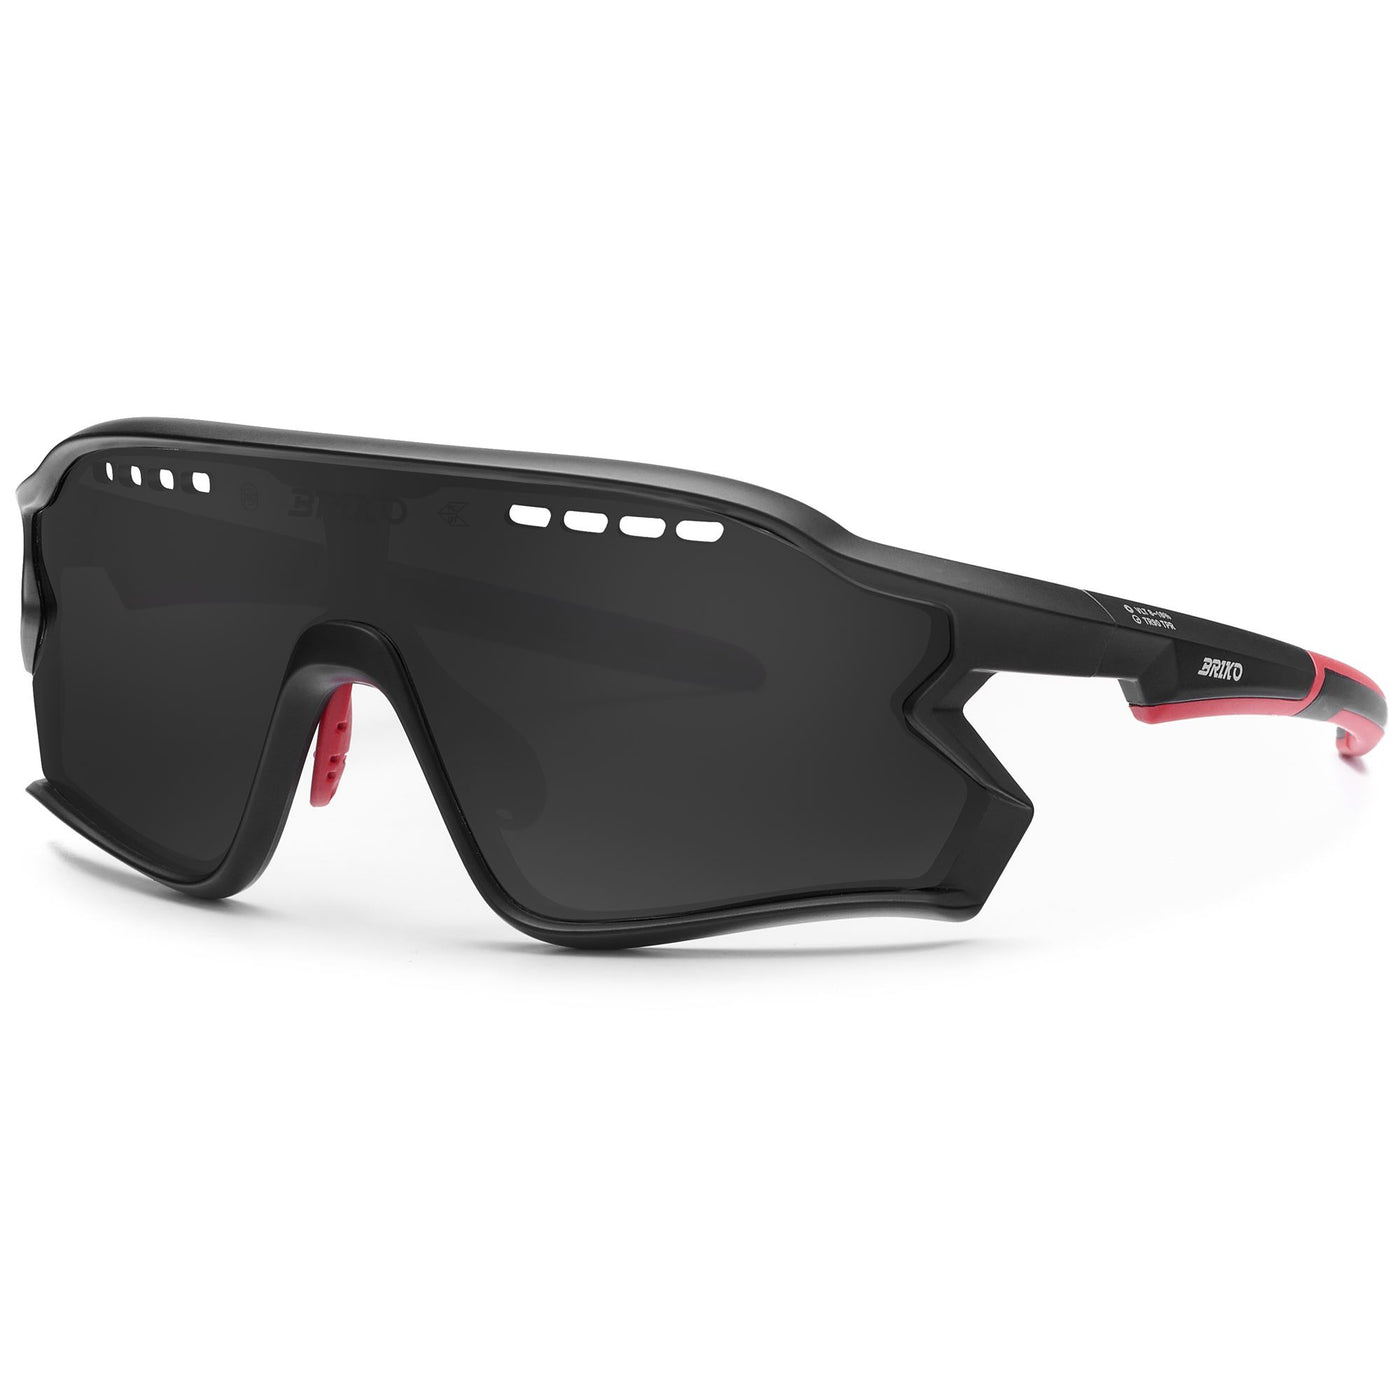 Glasses Unisex DAINTREE Sunglasses BLACK RED - SB3 Dressed Side (jpg Rgb)		